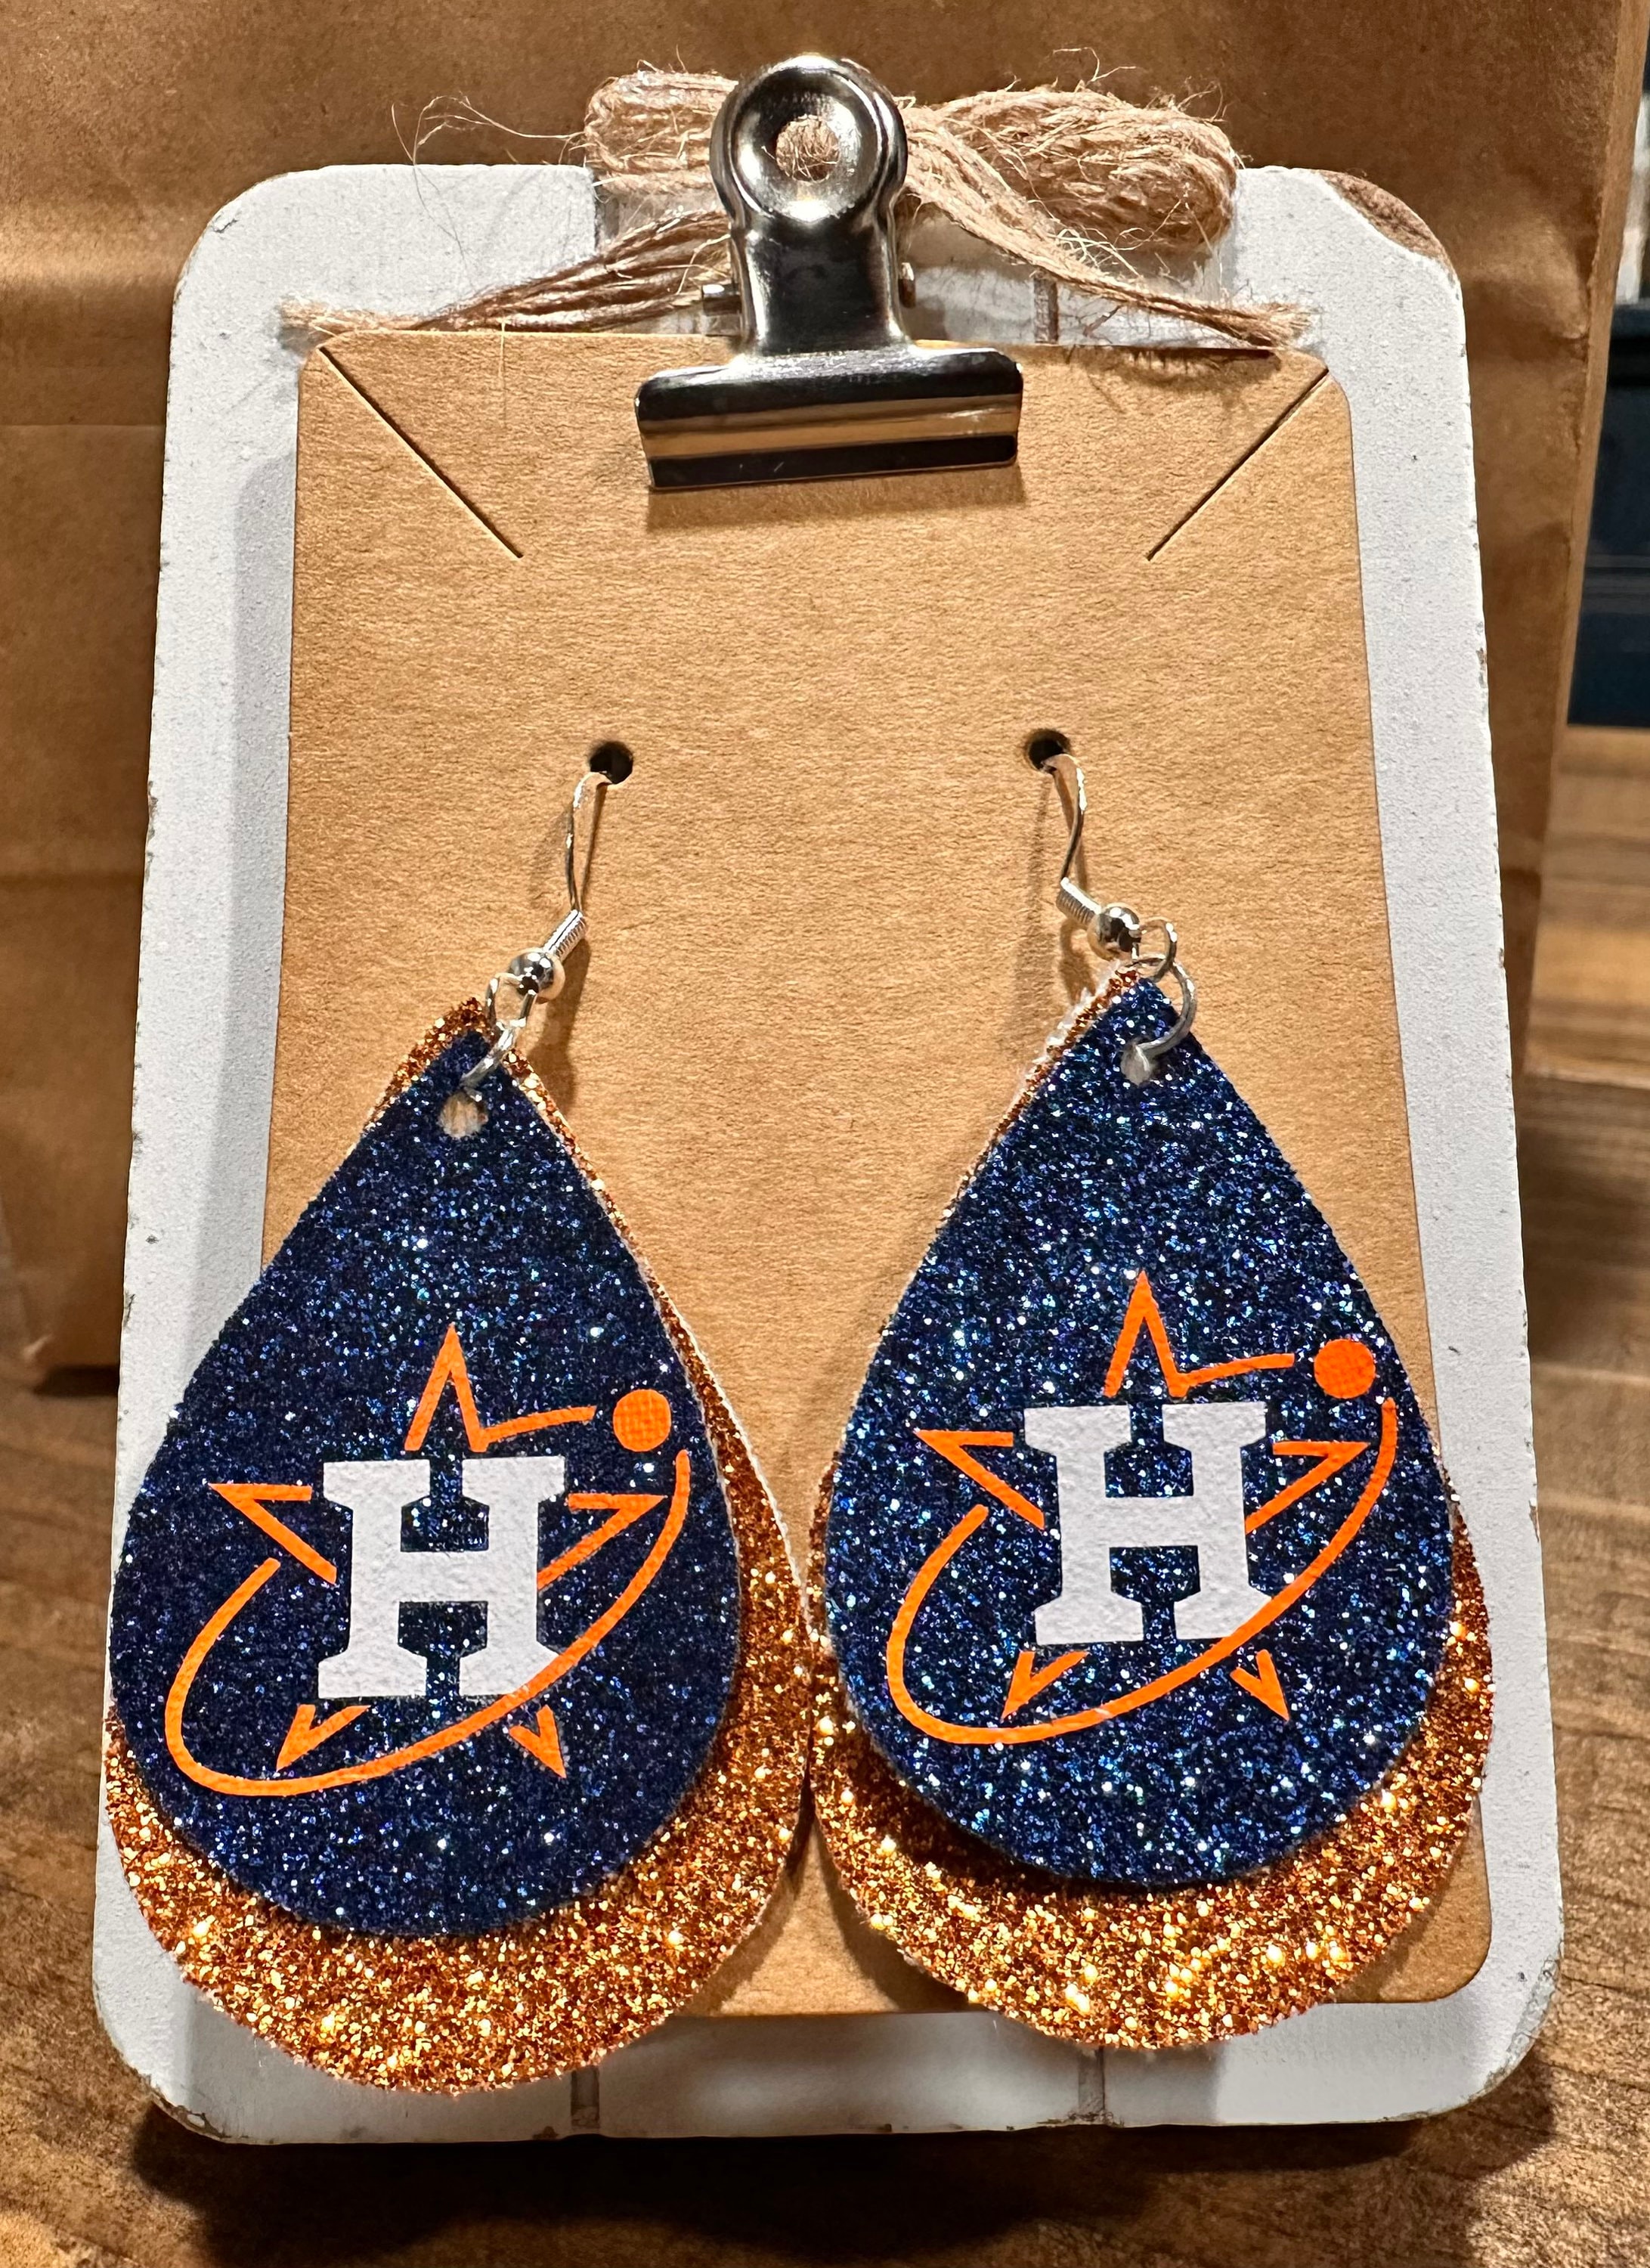 Astros Inspired Earrings/ Astros Earrings/ Houston Earrings, Houston Astros, Orange and Blue Earrings, Gift for Fans